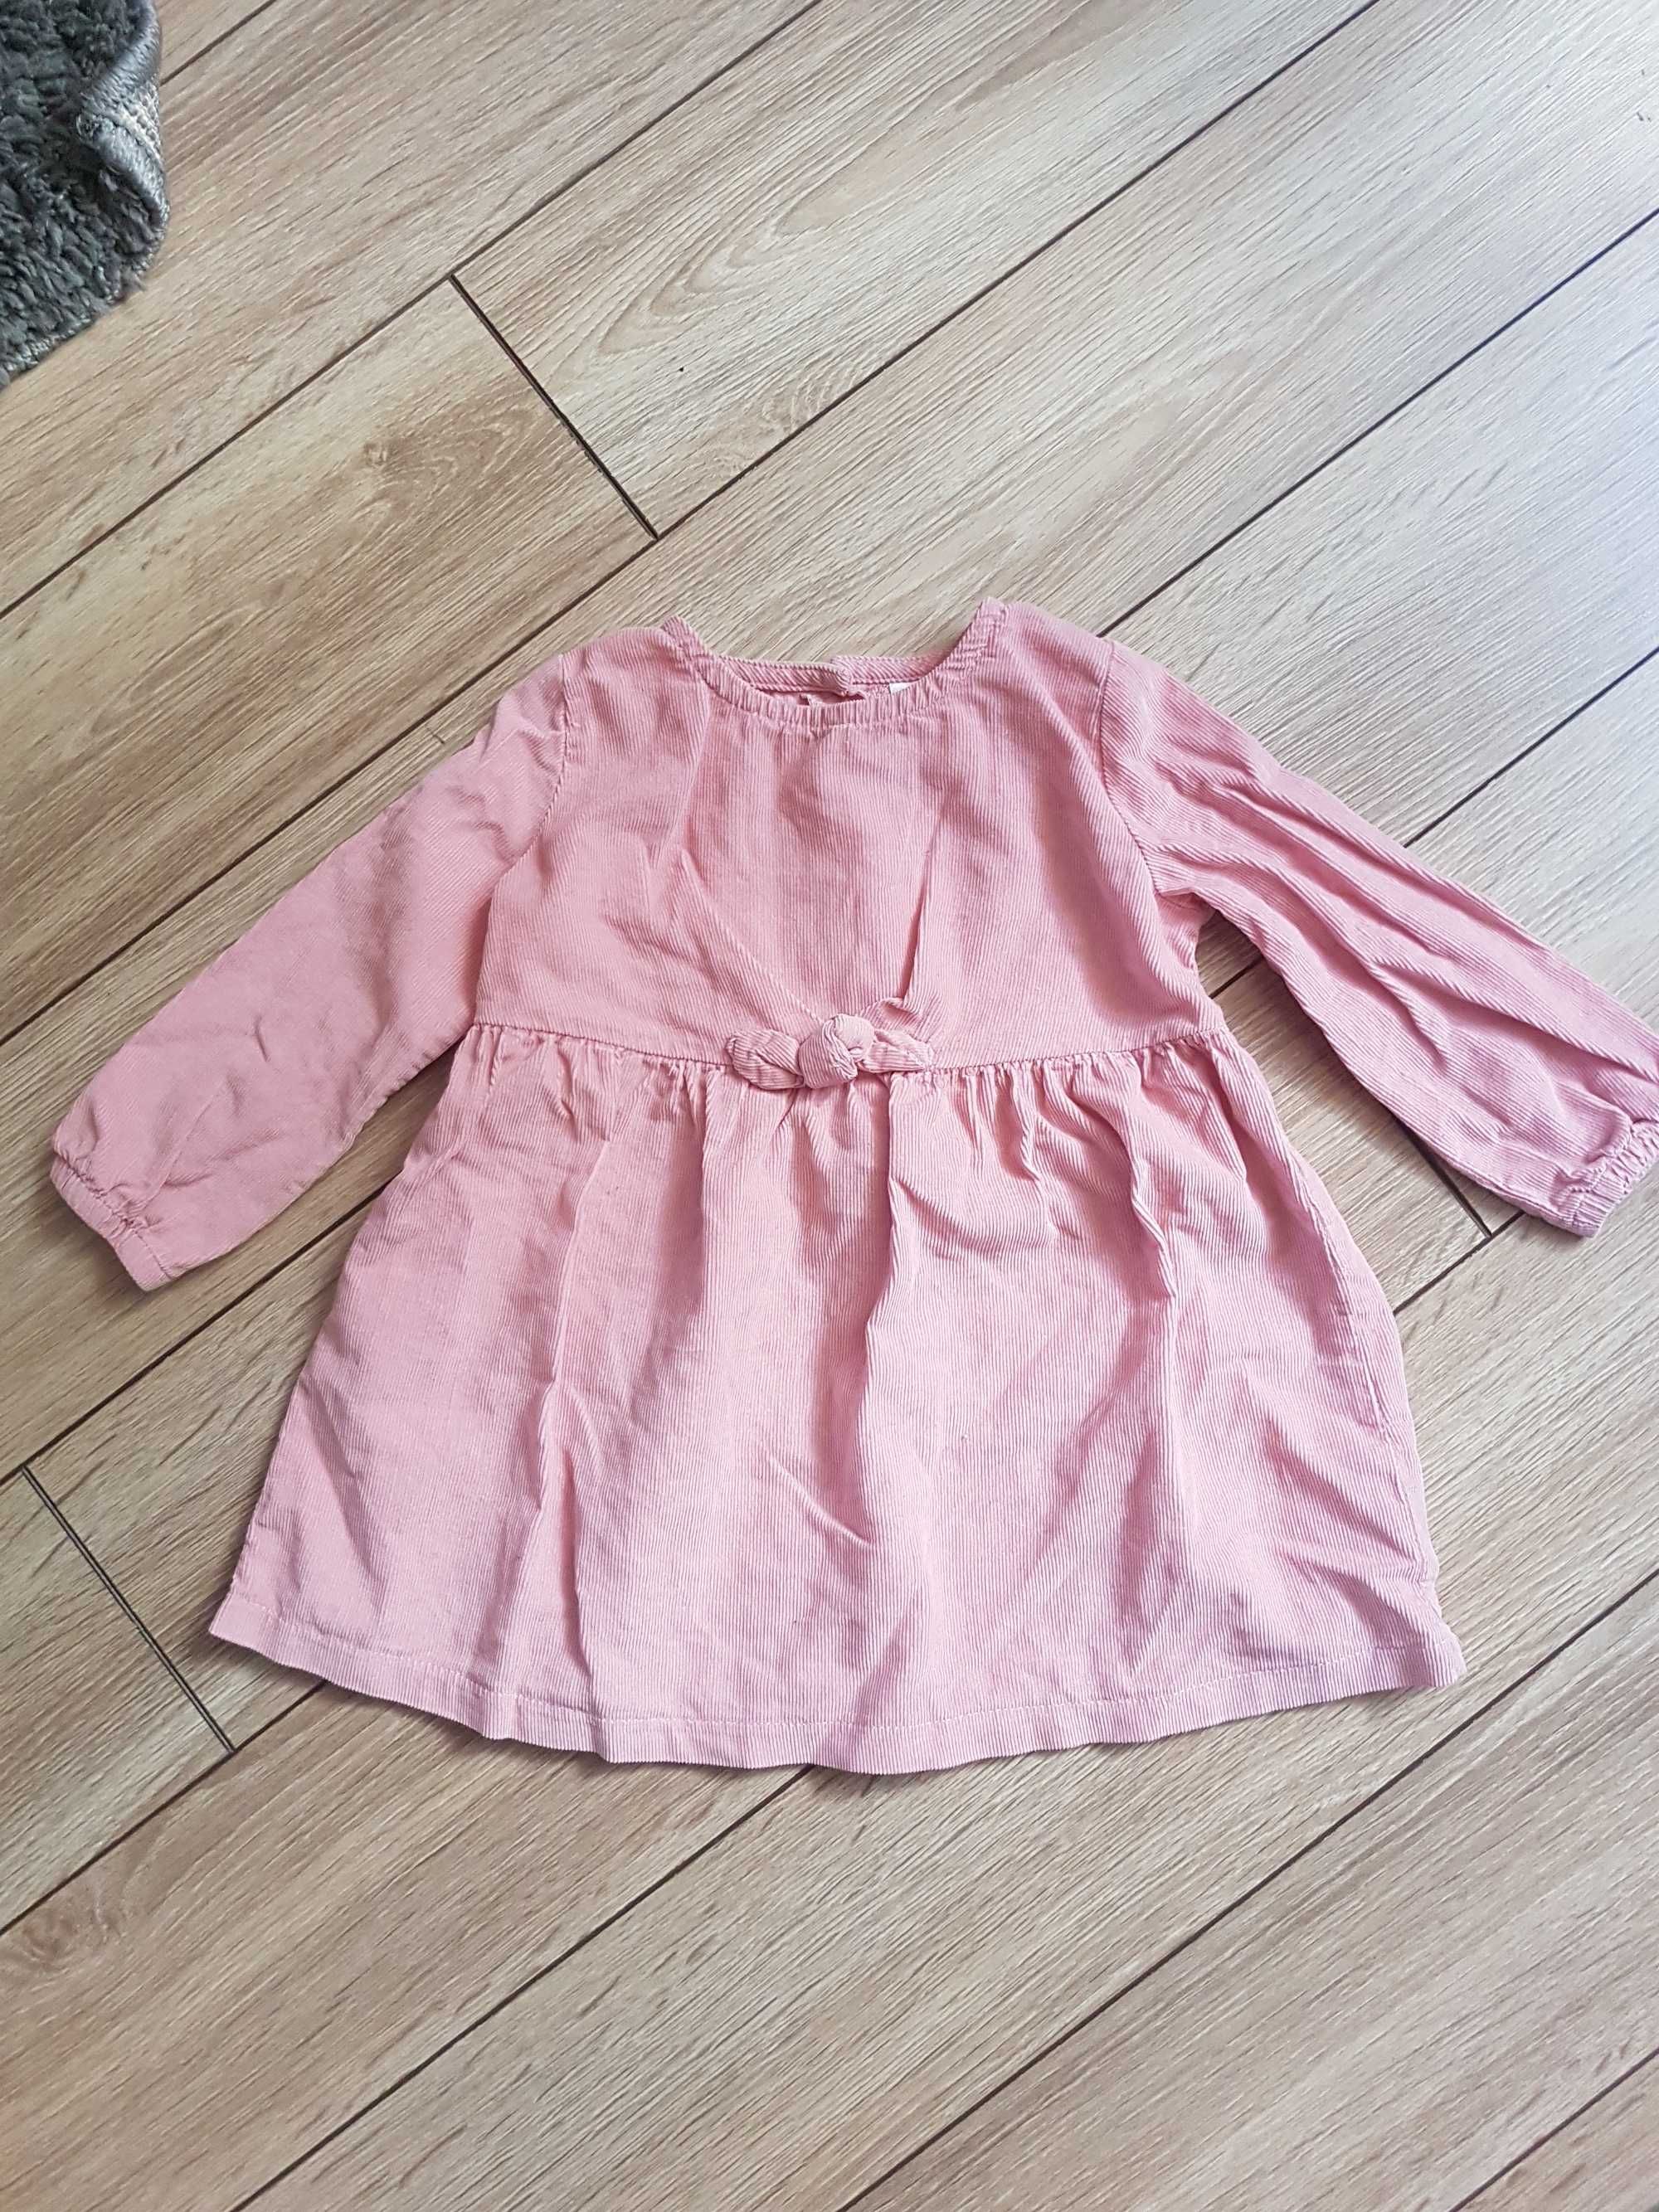 Zestaw ubranek dla dziewczynki 74 bluzeczki sukienka kamizelka